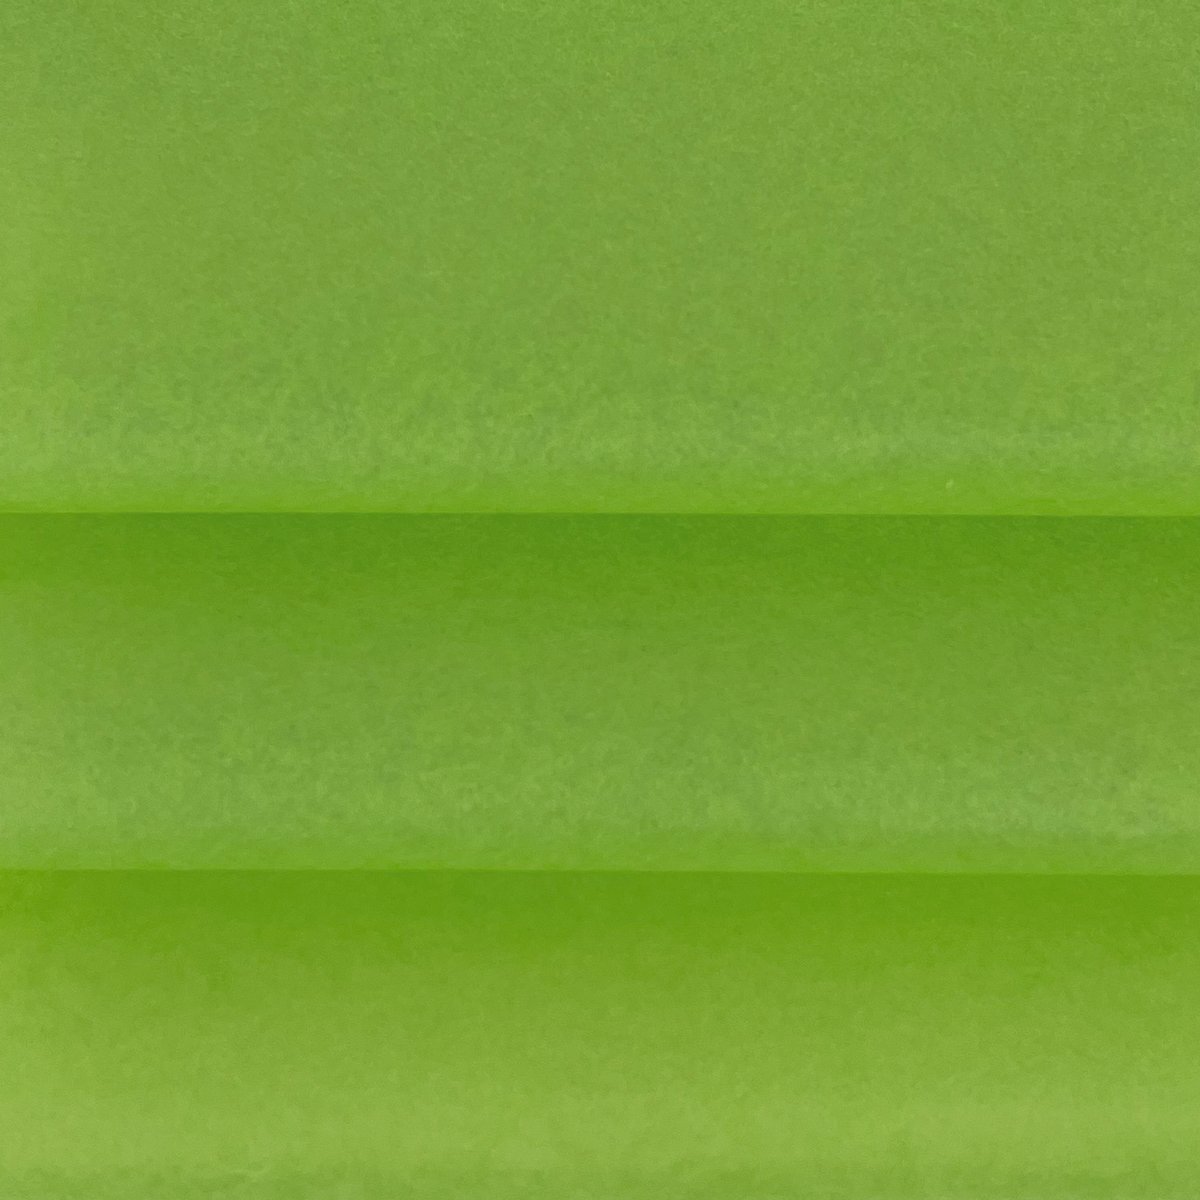 Vloeipapier Groen